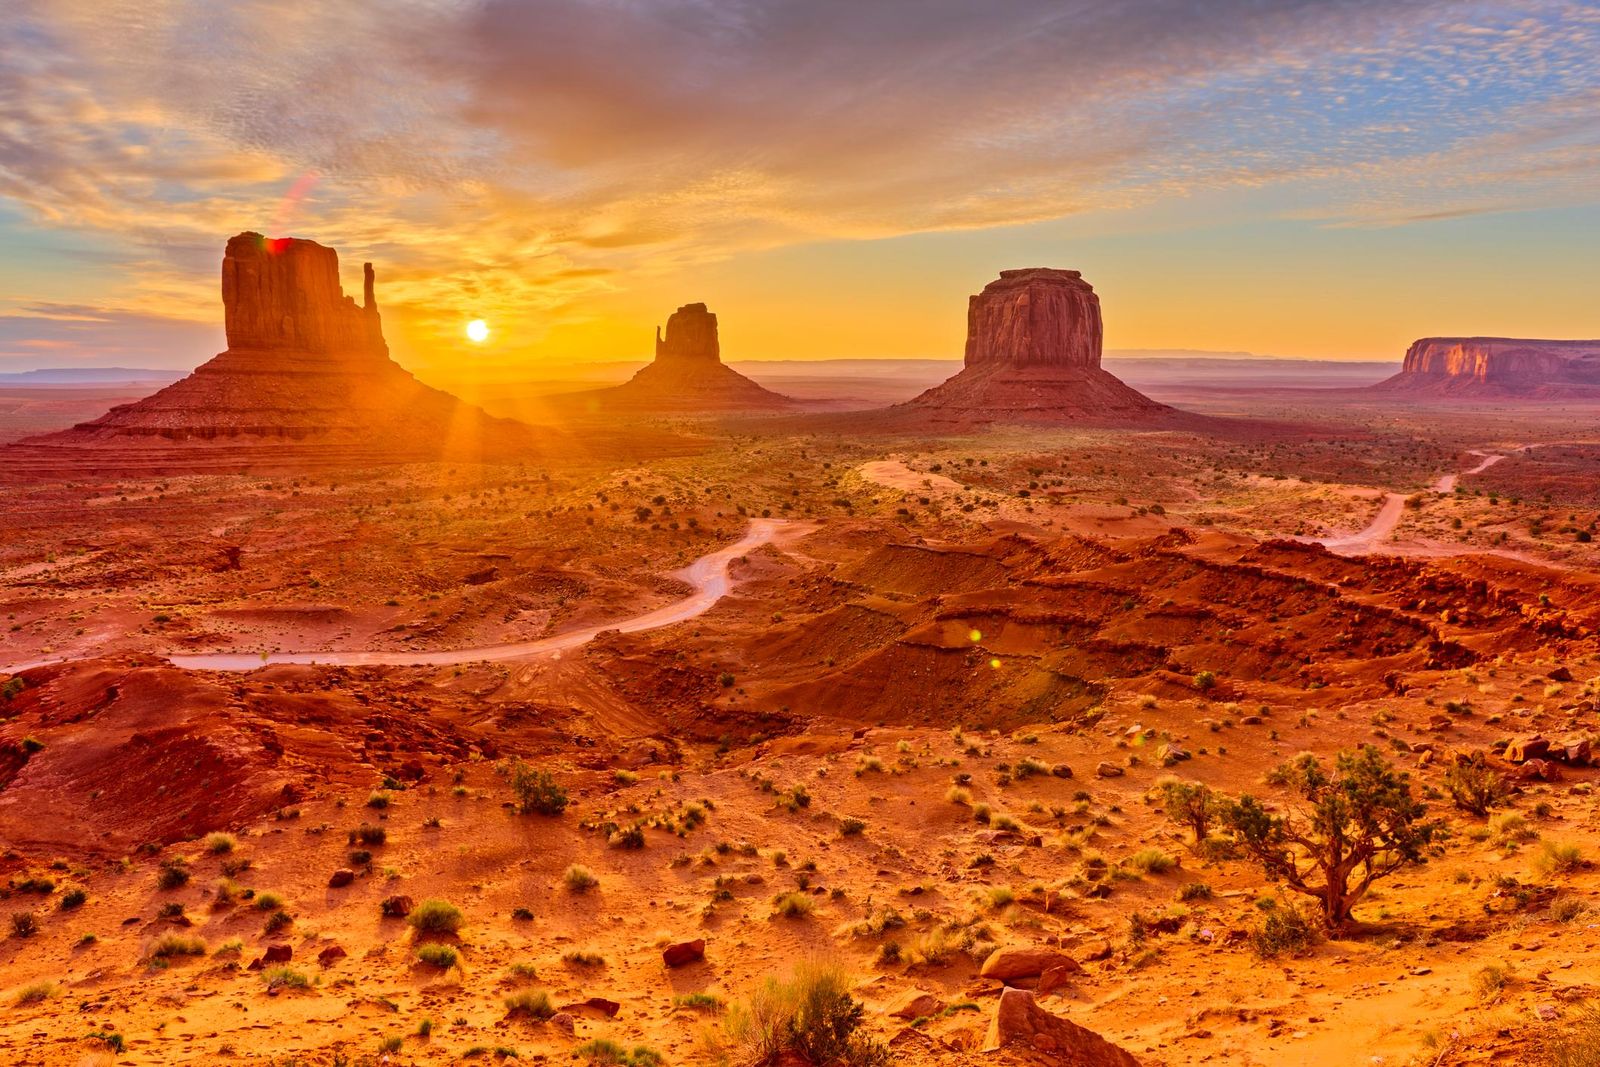 Desert to coast: Southwest USA self-drive tour